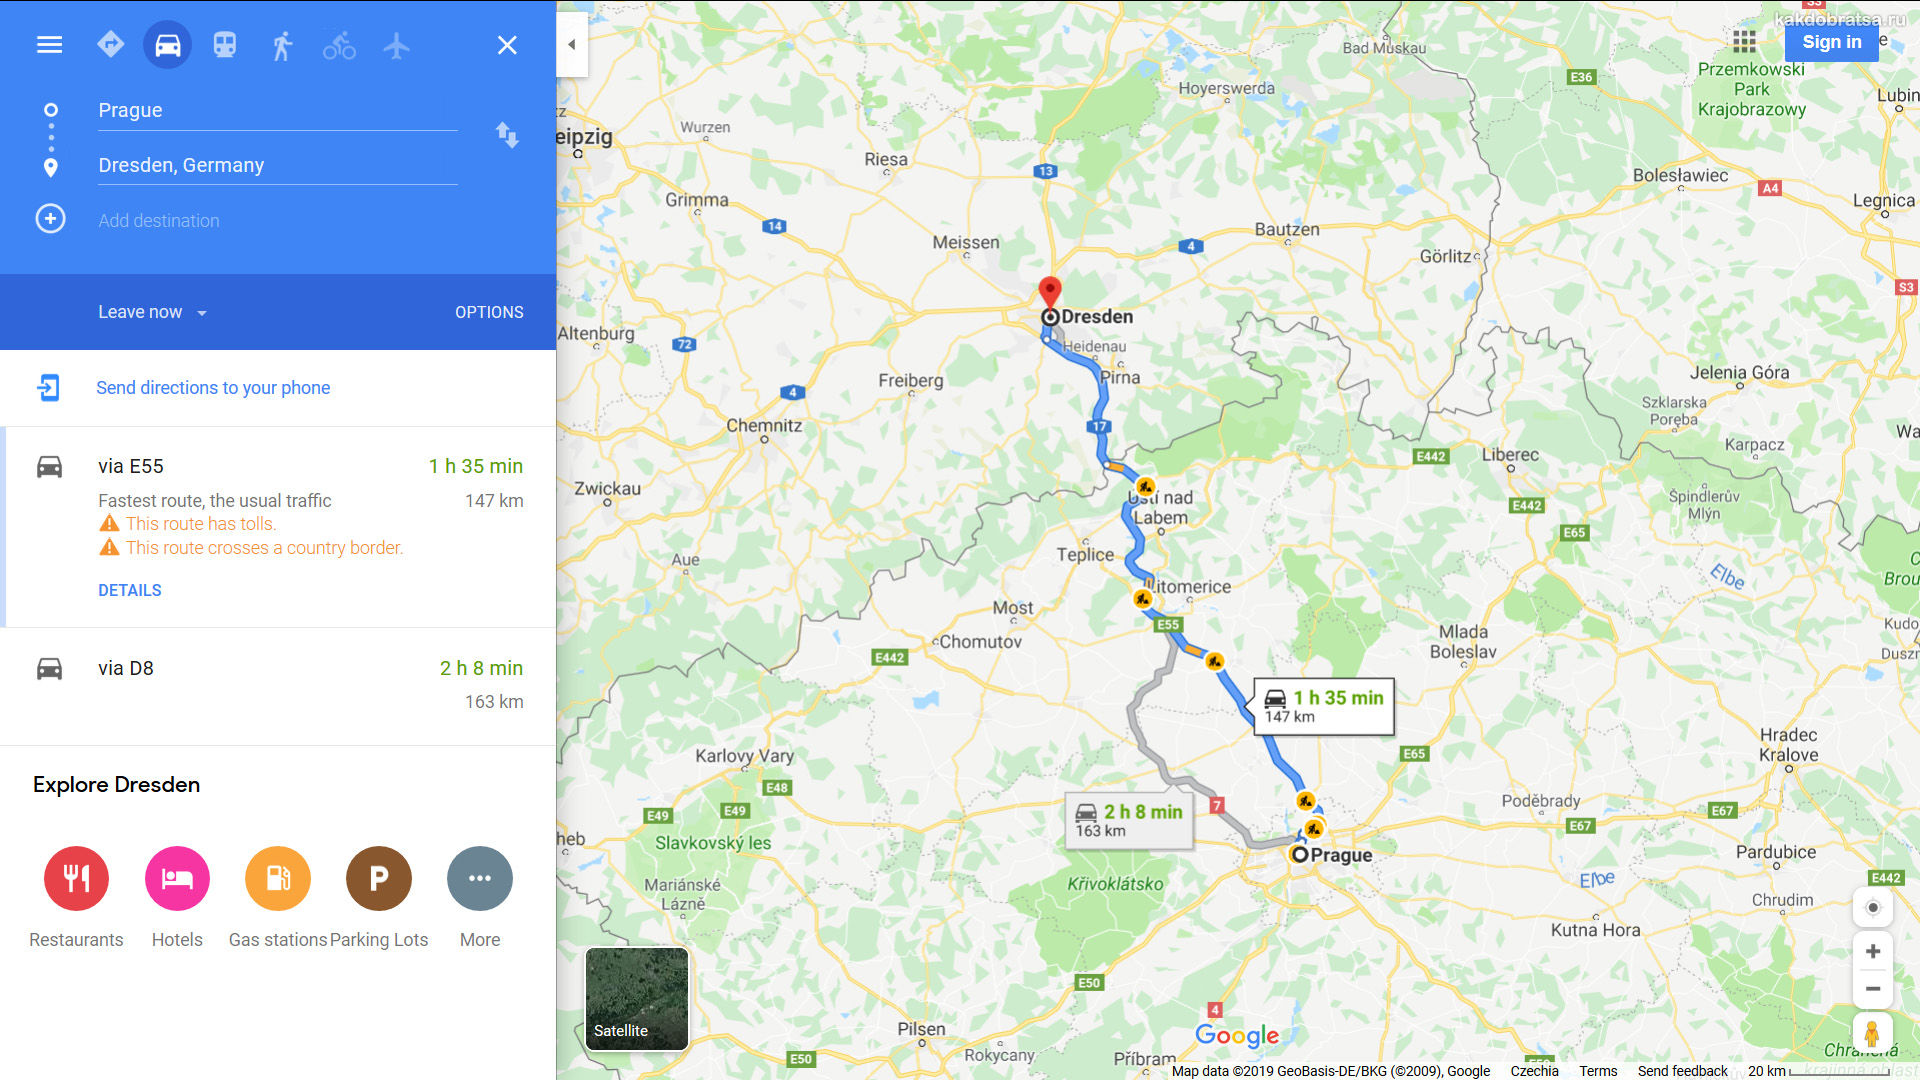 Как распределить 4 дня пребывания в германии между берлином и дрезденом.  - советы, вопросы и ответы путешественникам на трипстере